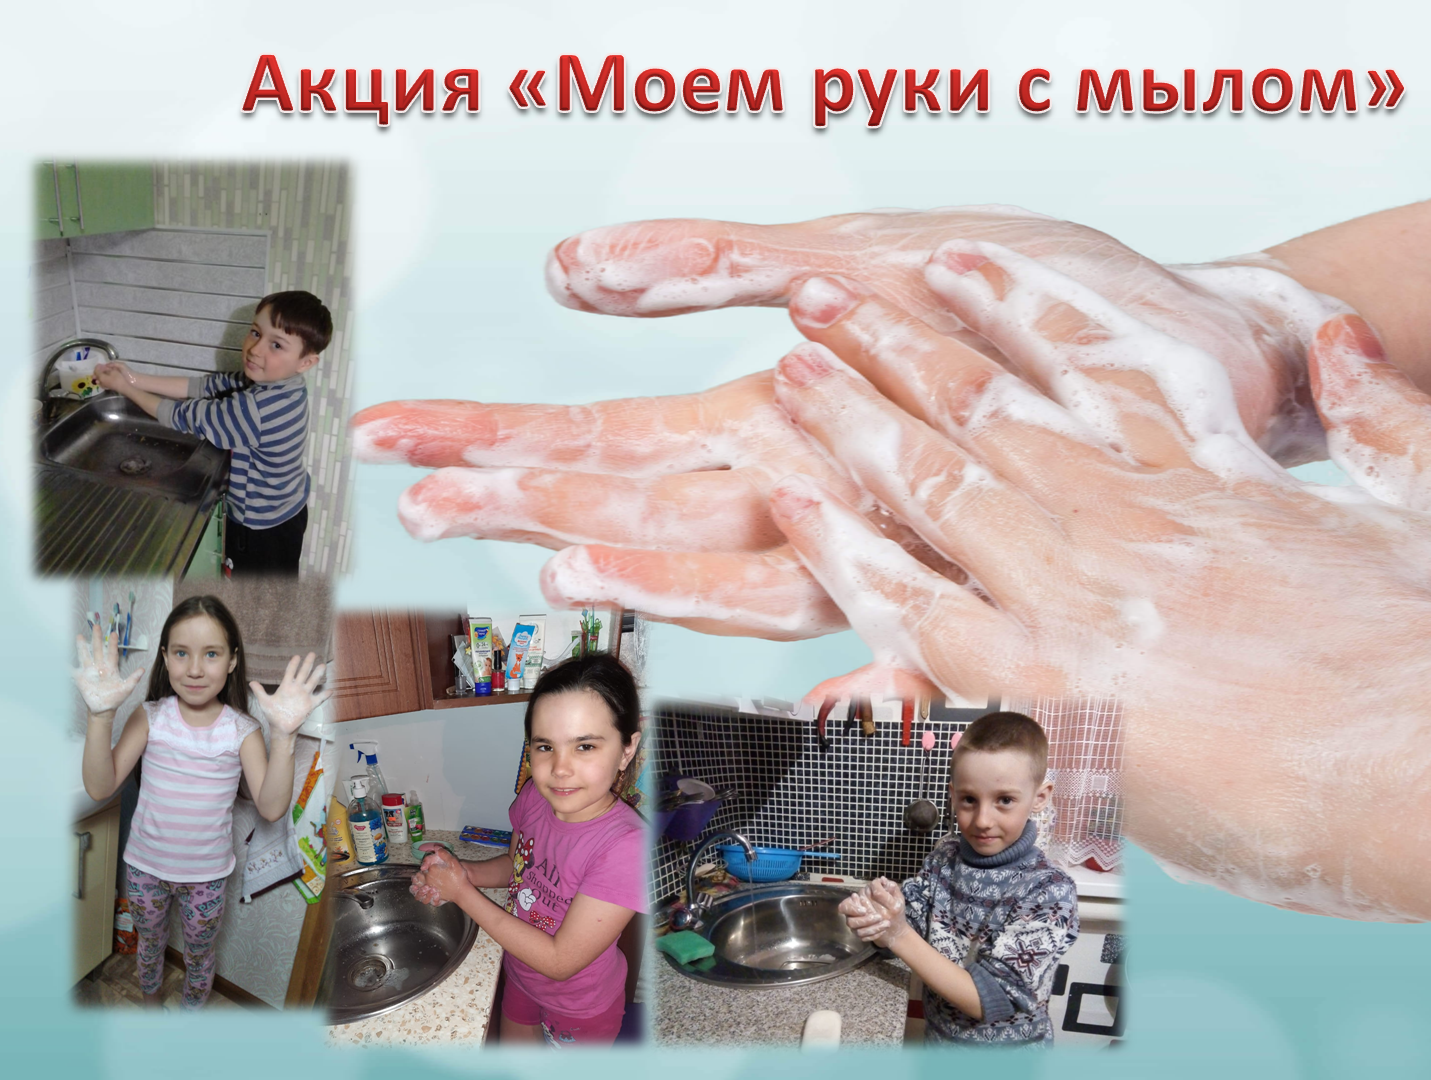 Акция "Моем руки с мылом"